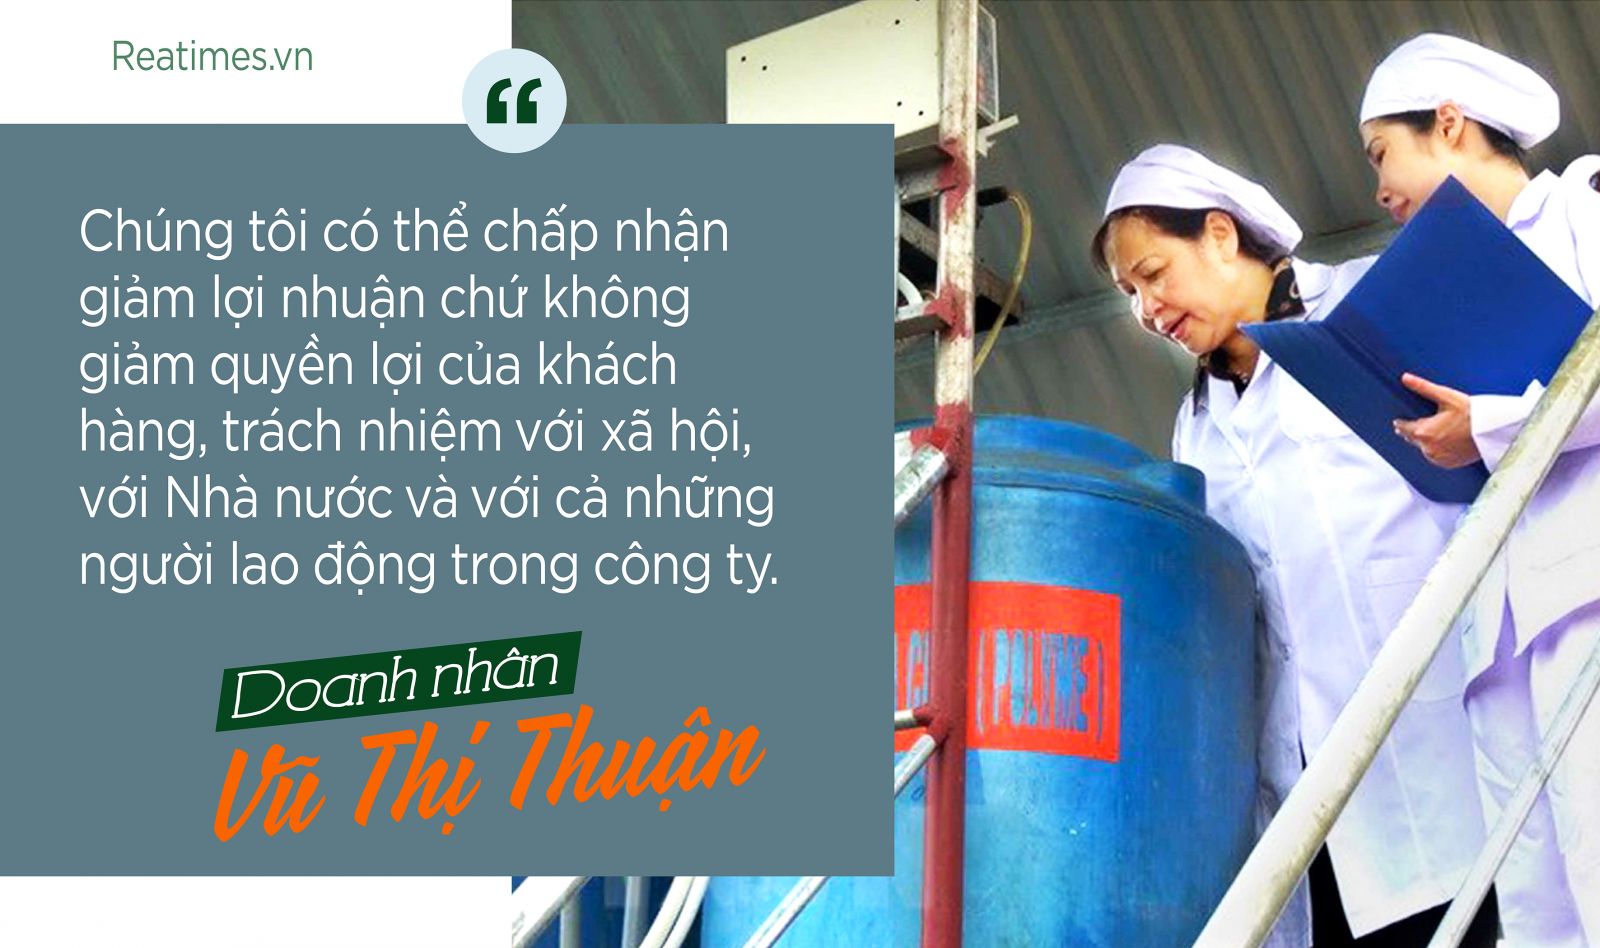 Doanh nhân Vũ Thị Thuận